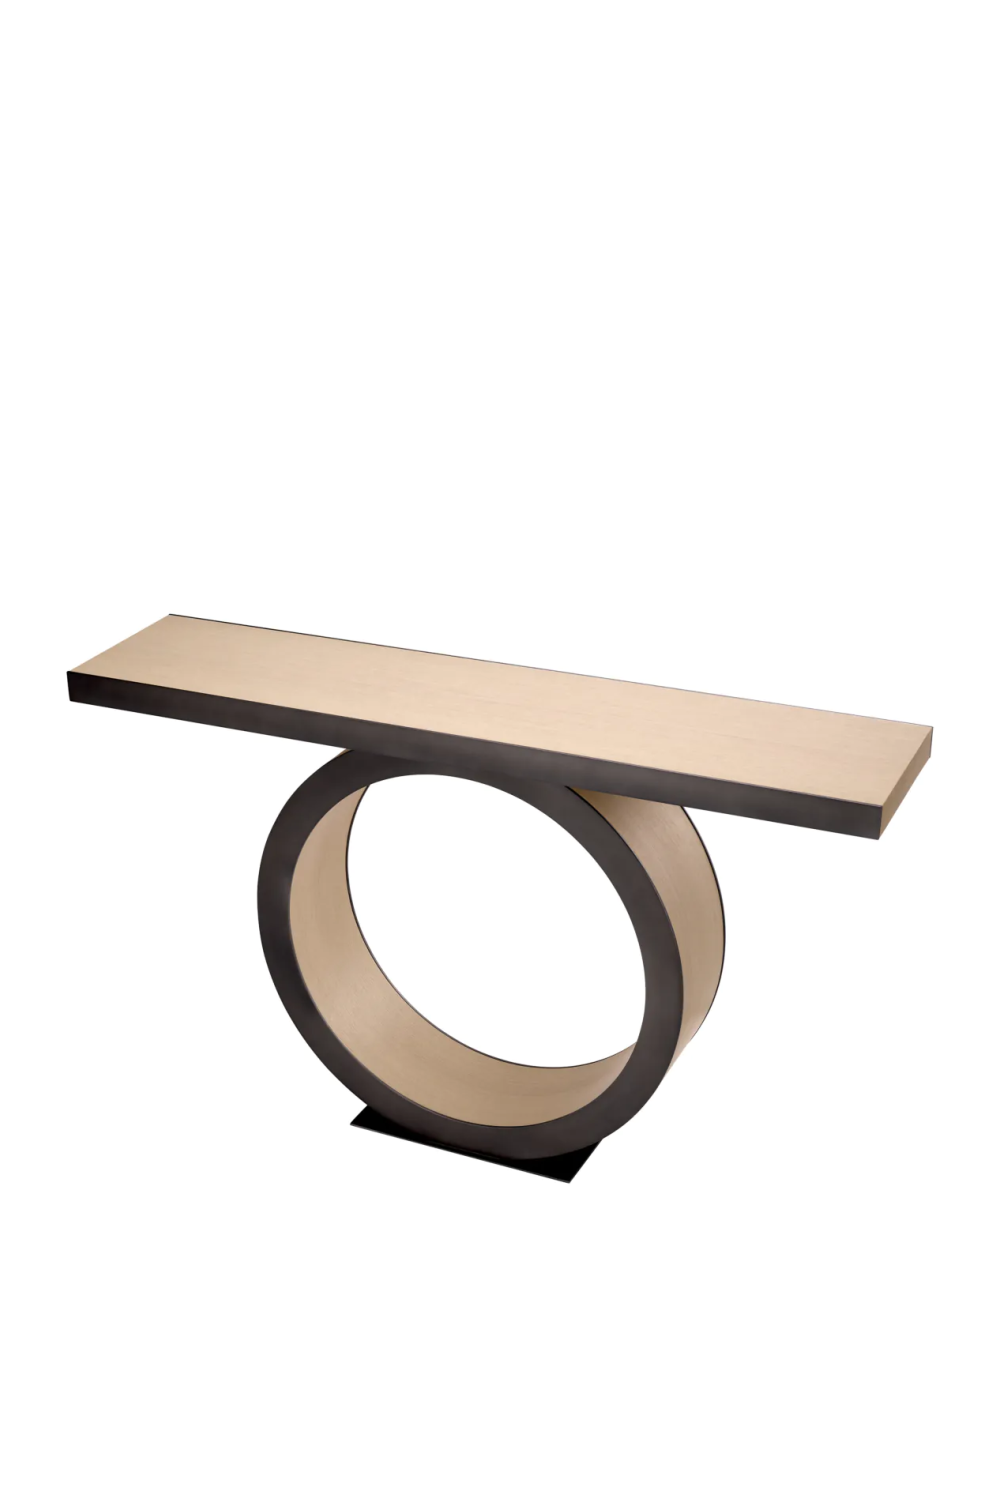 Oak Ring Console Table | Eichholtz Odis | Oroa.com